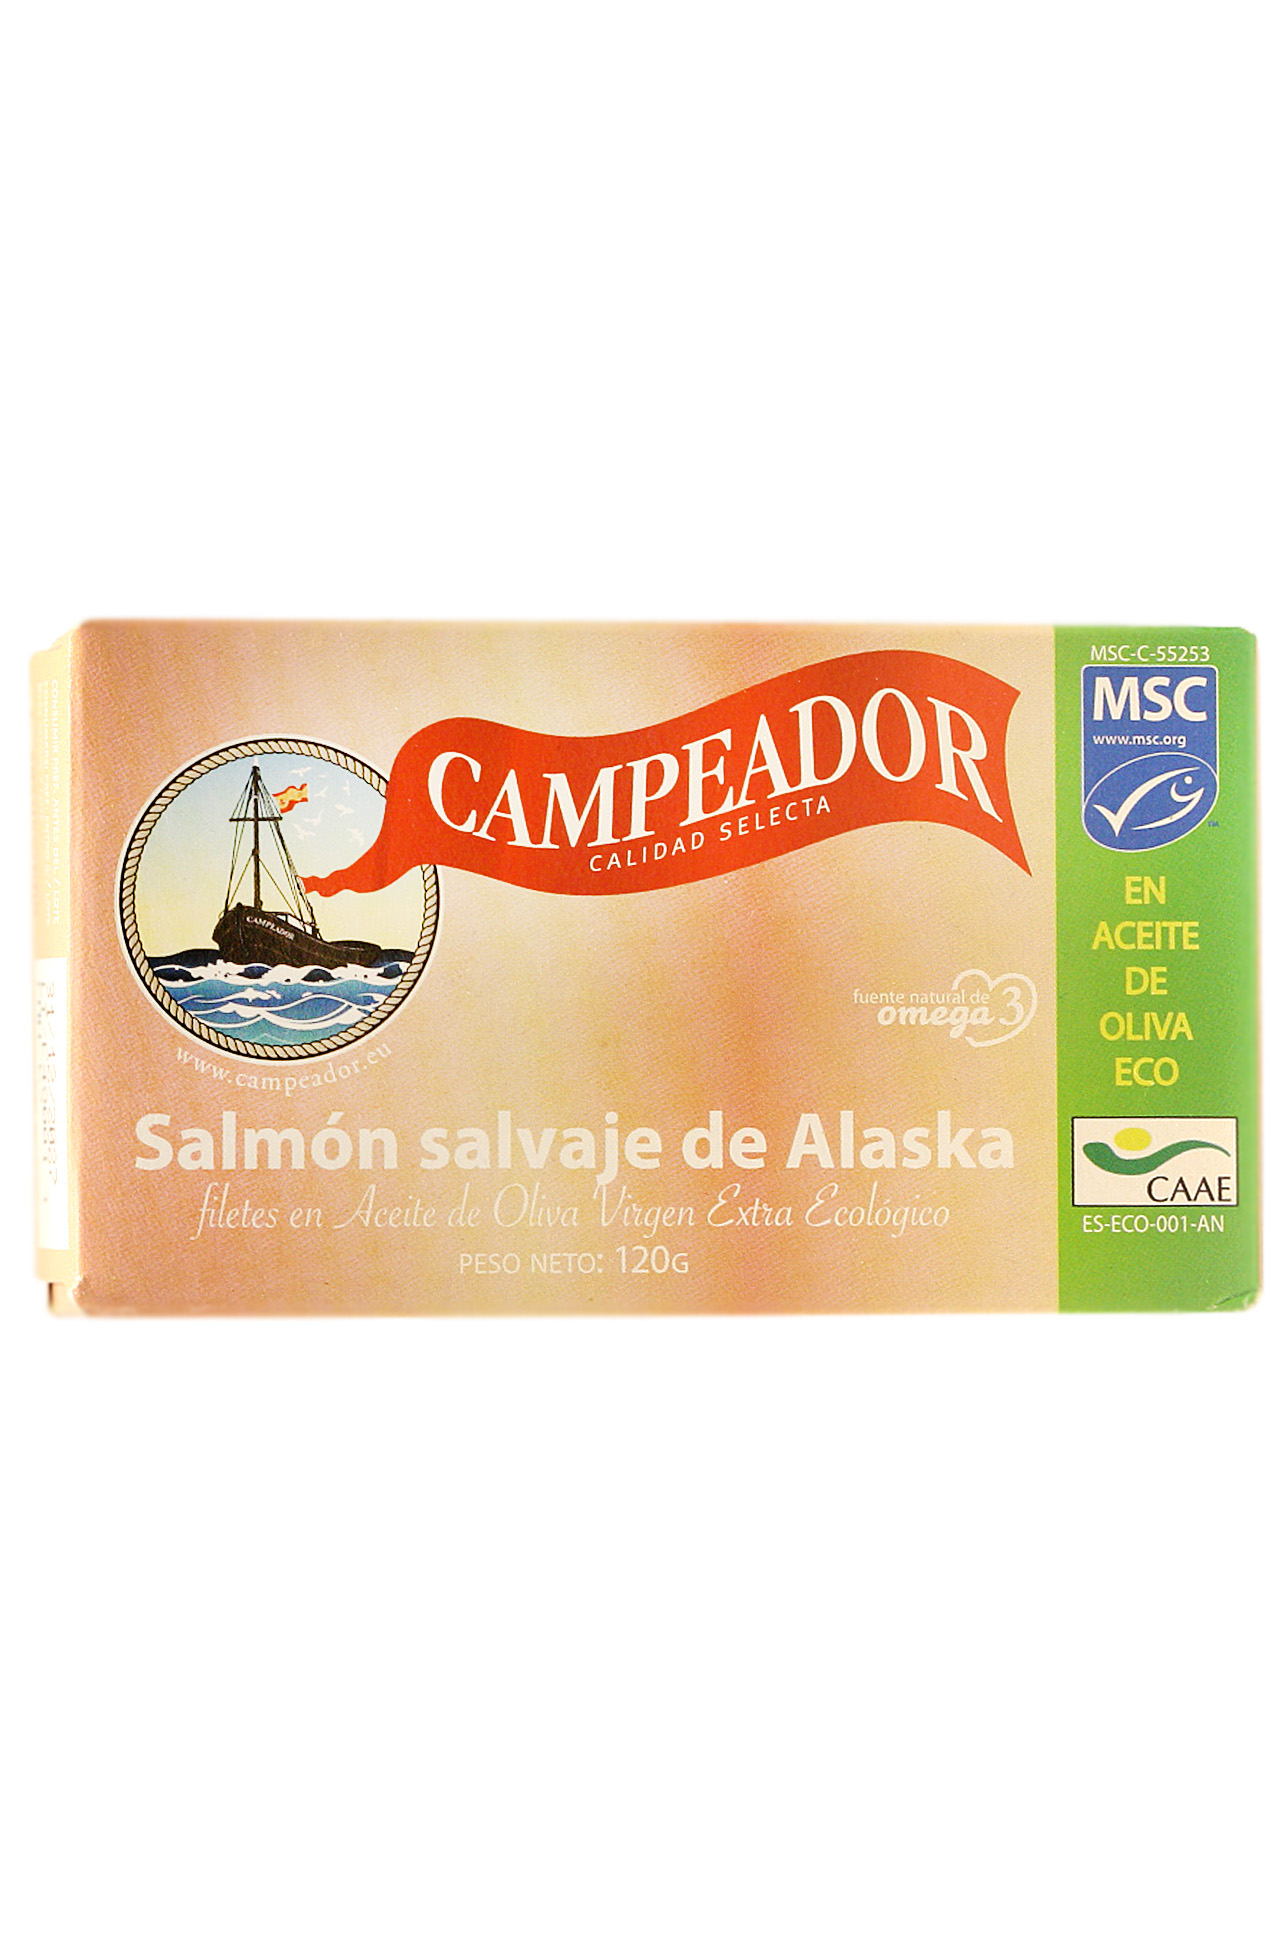 Salmon in extra virgin olive oil